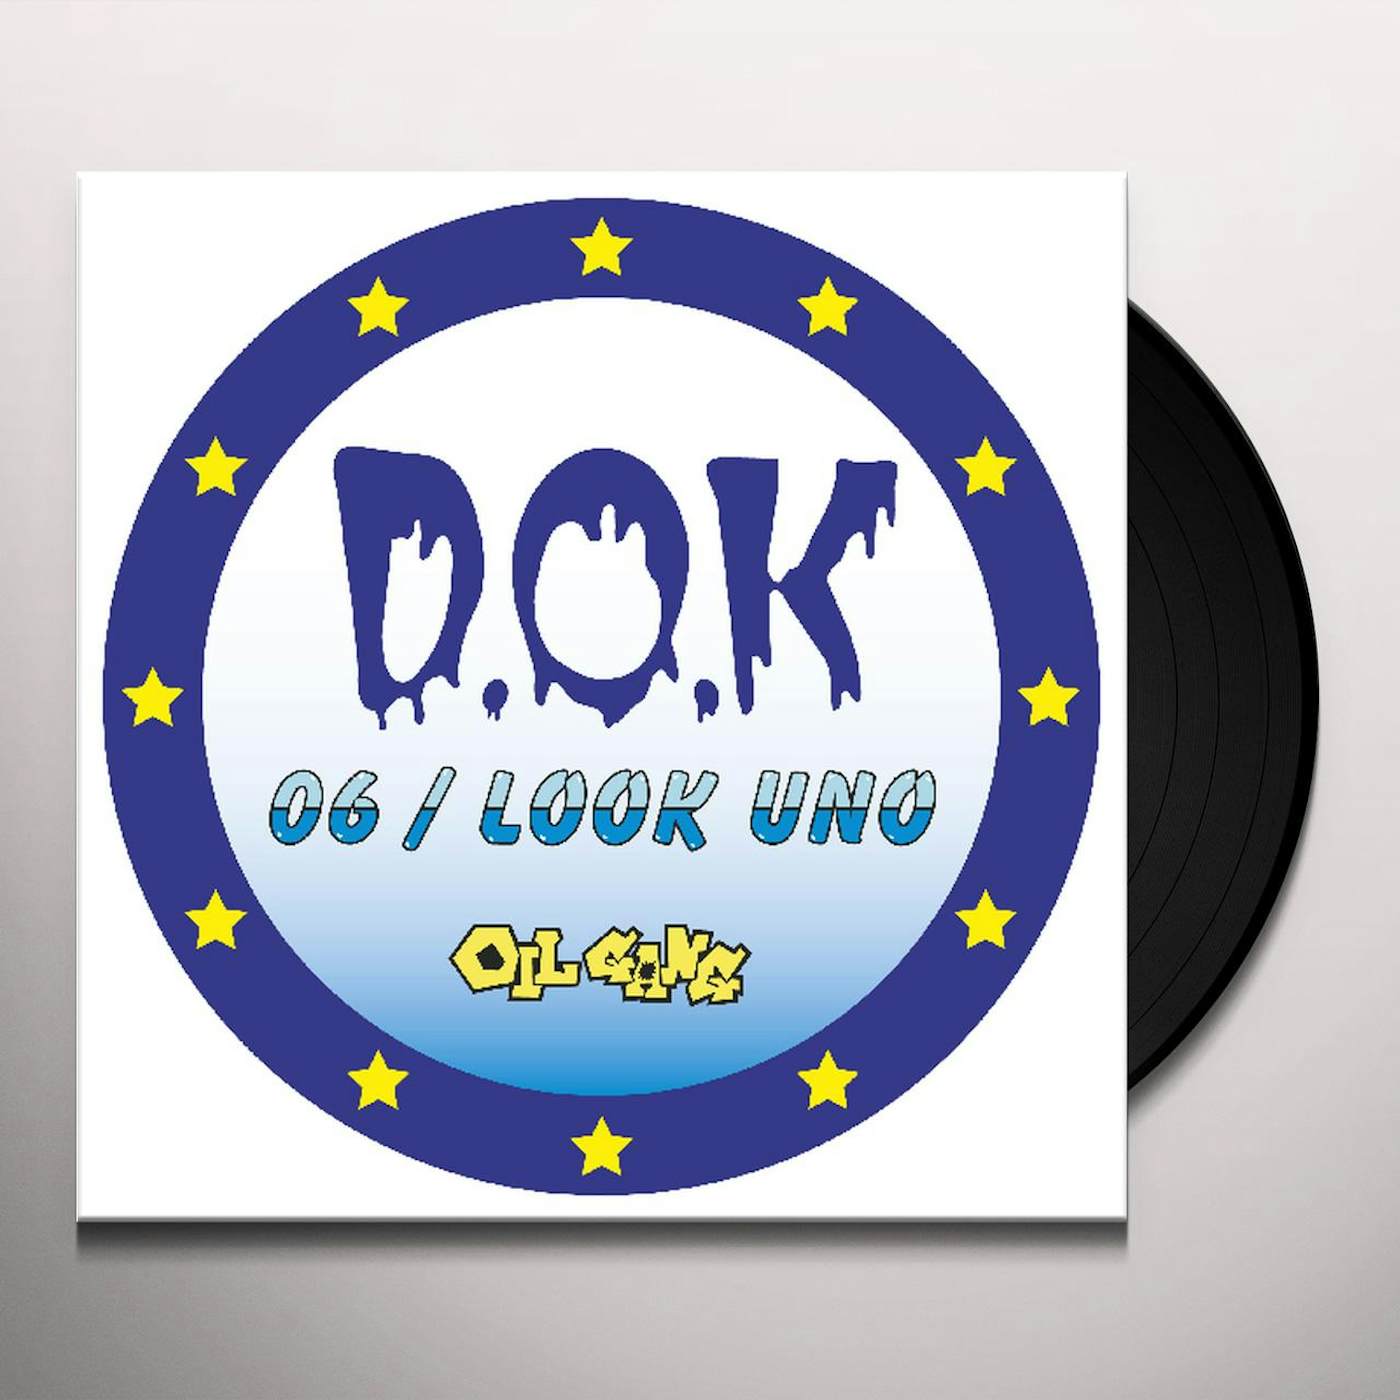 D.o.k. 06 / LOOK UNO Vinyl Record